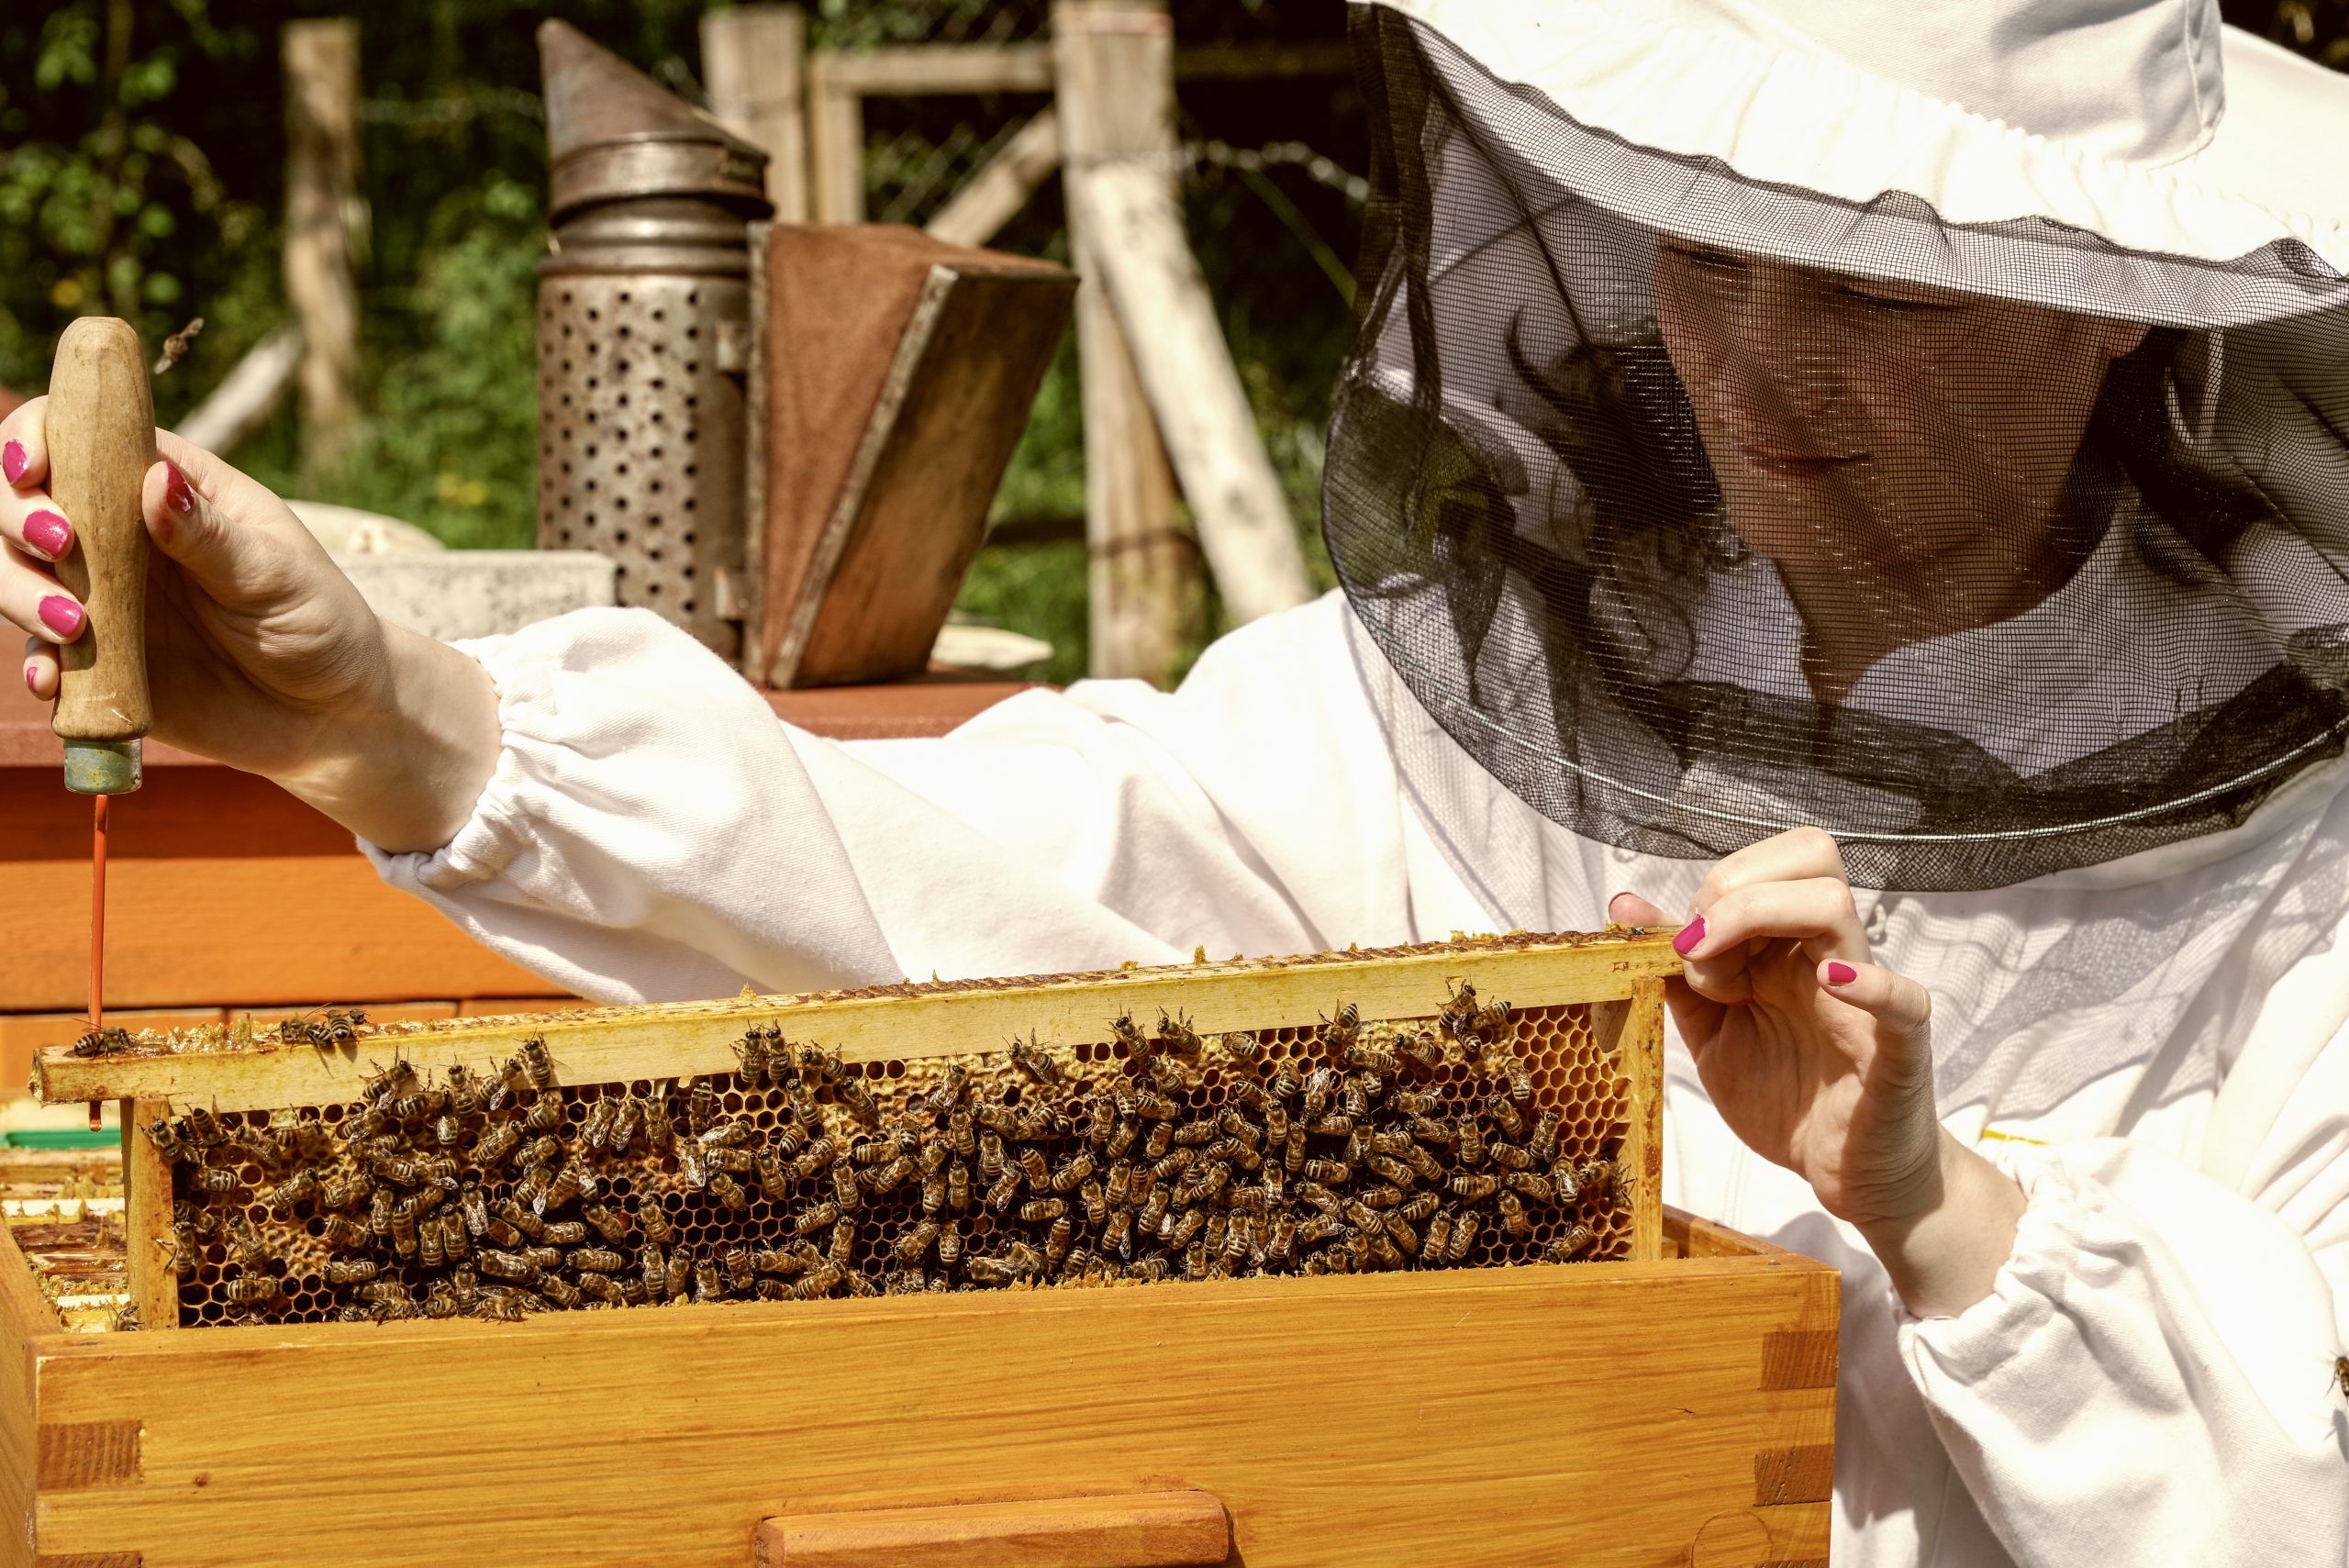 The EU’s beekeeping sector